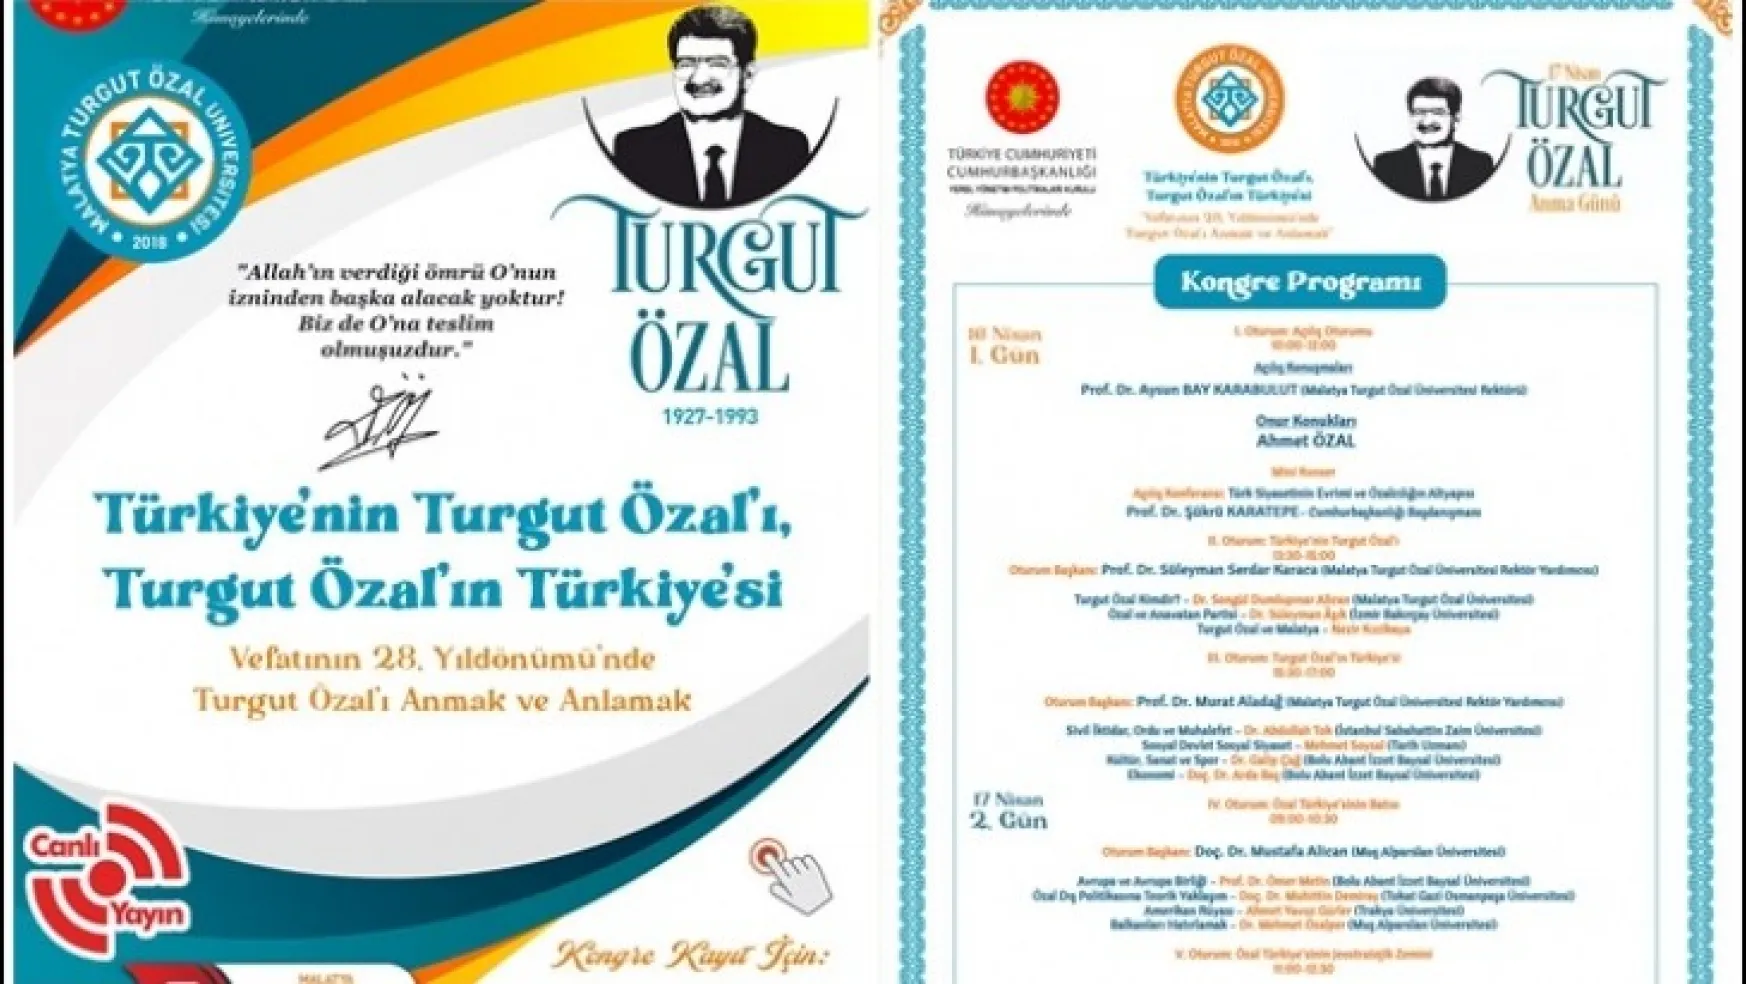 MTÜ'den Türkiye'nin Turgut Özal'ı, Turgut Özal'ın Türkiye'si konulu E-Kongre